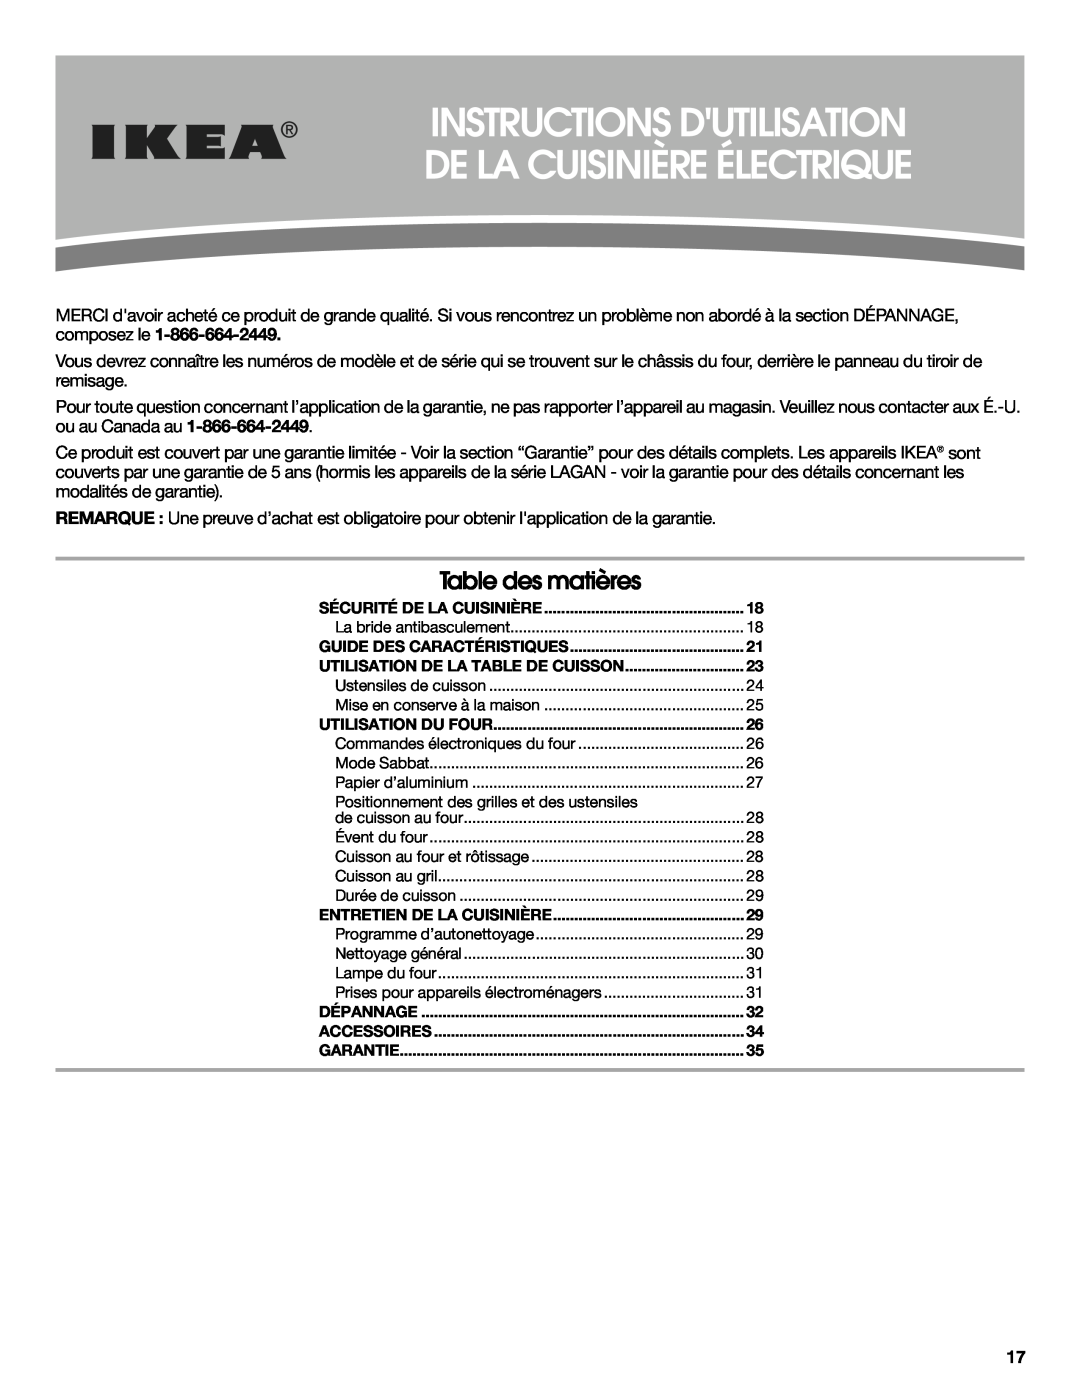 Whirlpool W10545225B warranty Instructions Dutilisation De La Cuisinière Électrique, Table des matières 